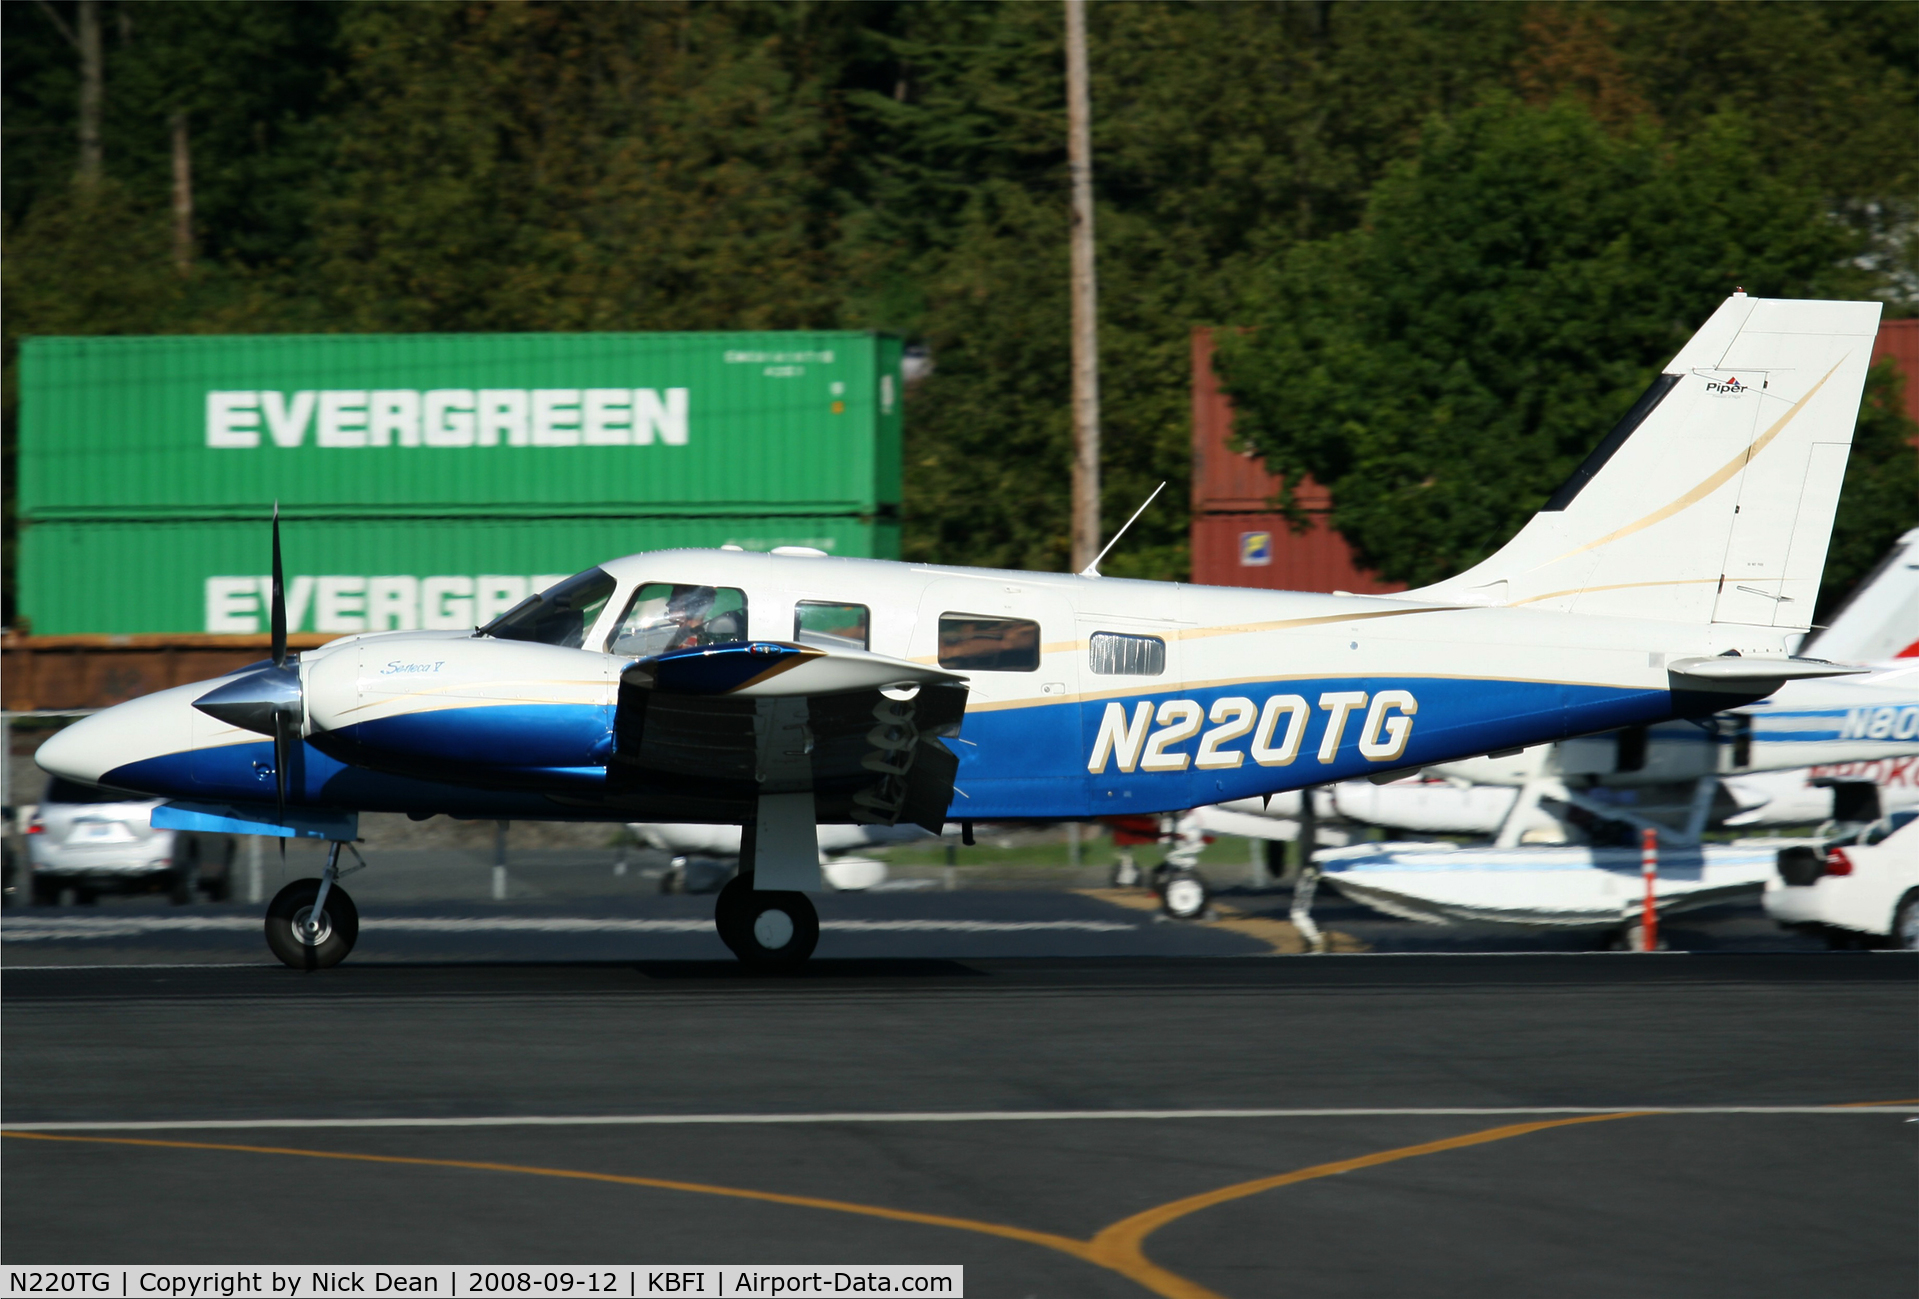 N220TG, 2002 Piper PA-34-220T C/N 3449265, /